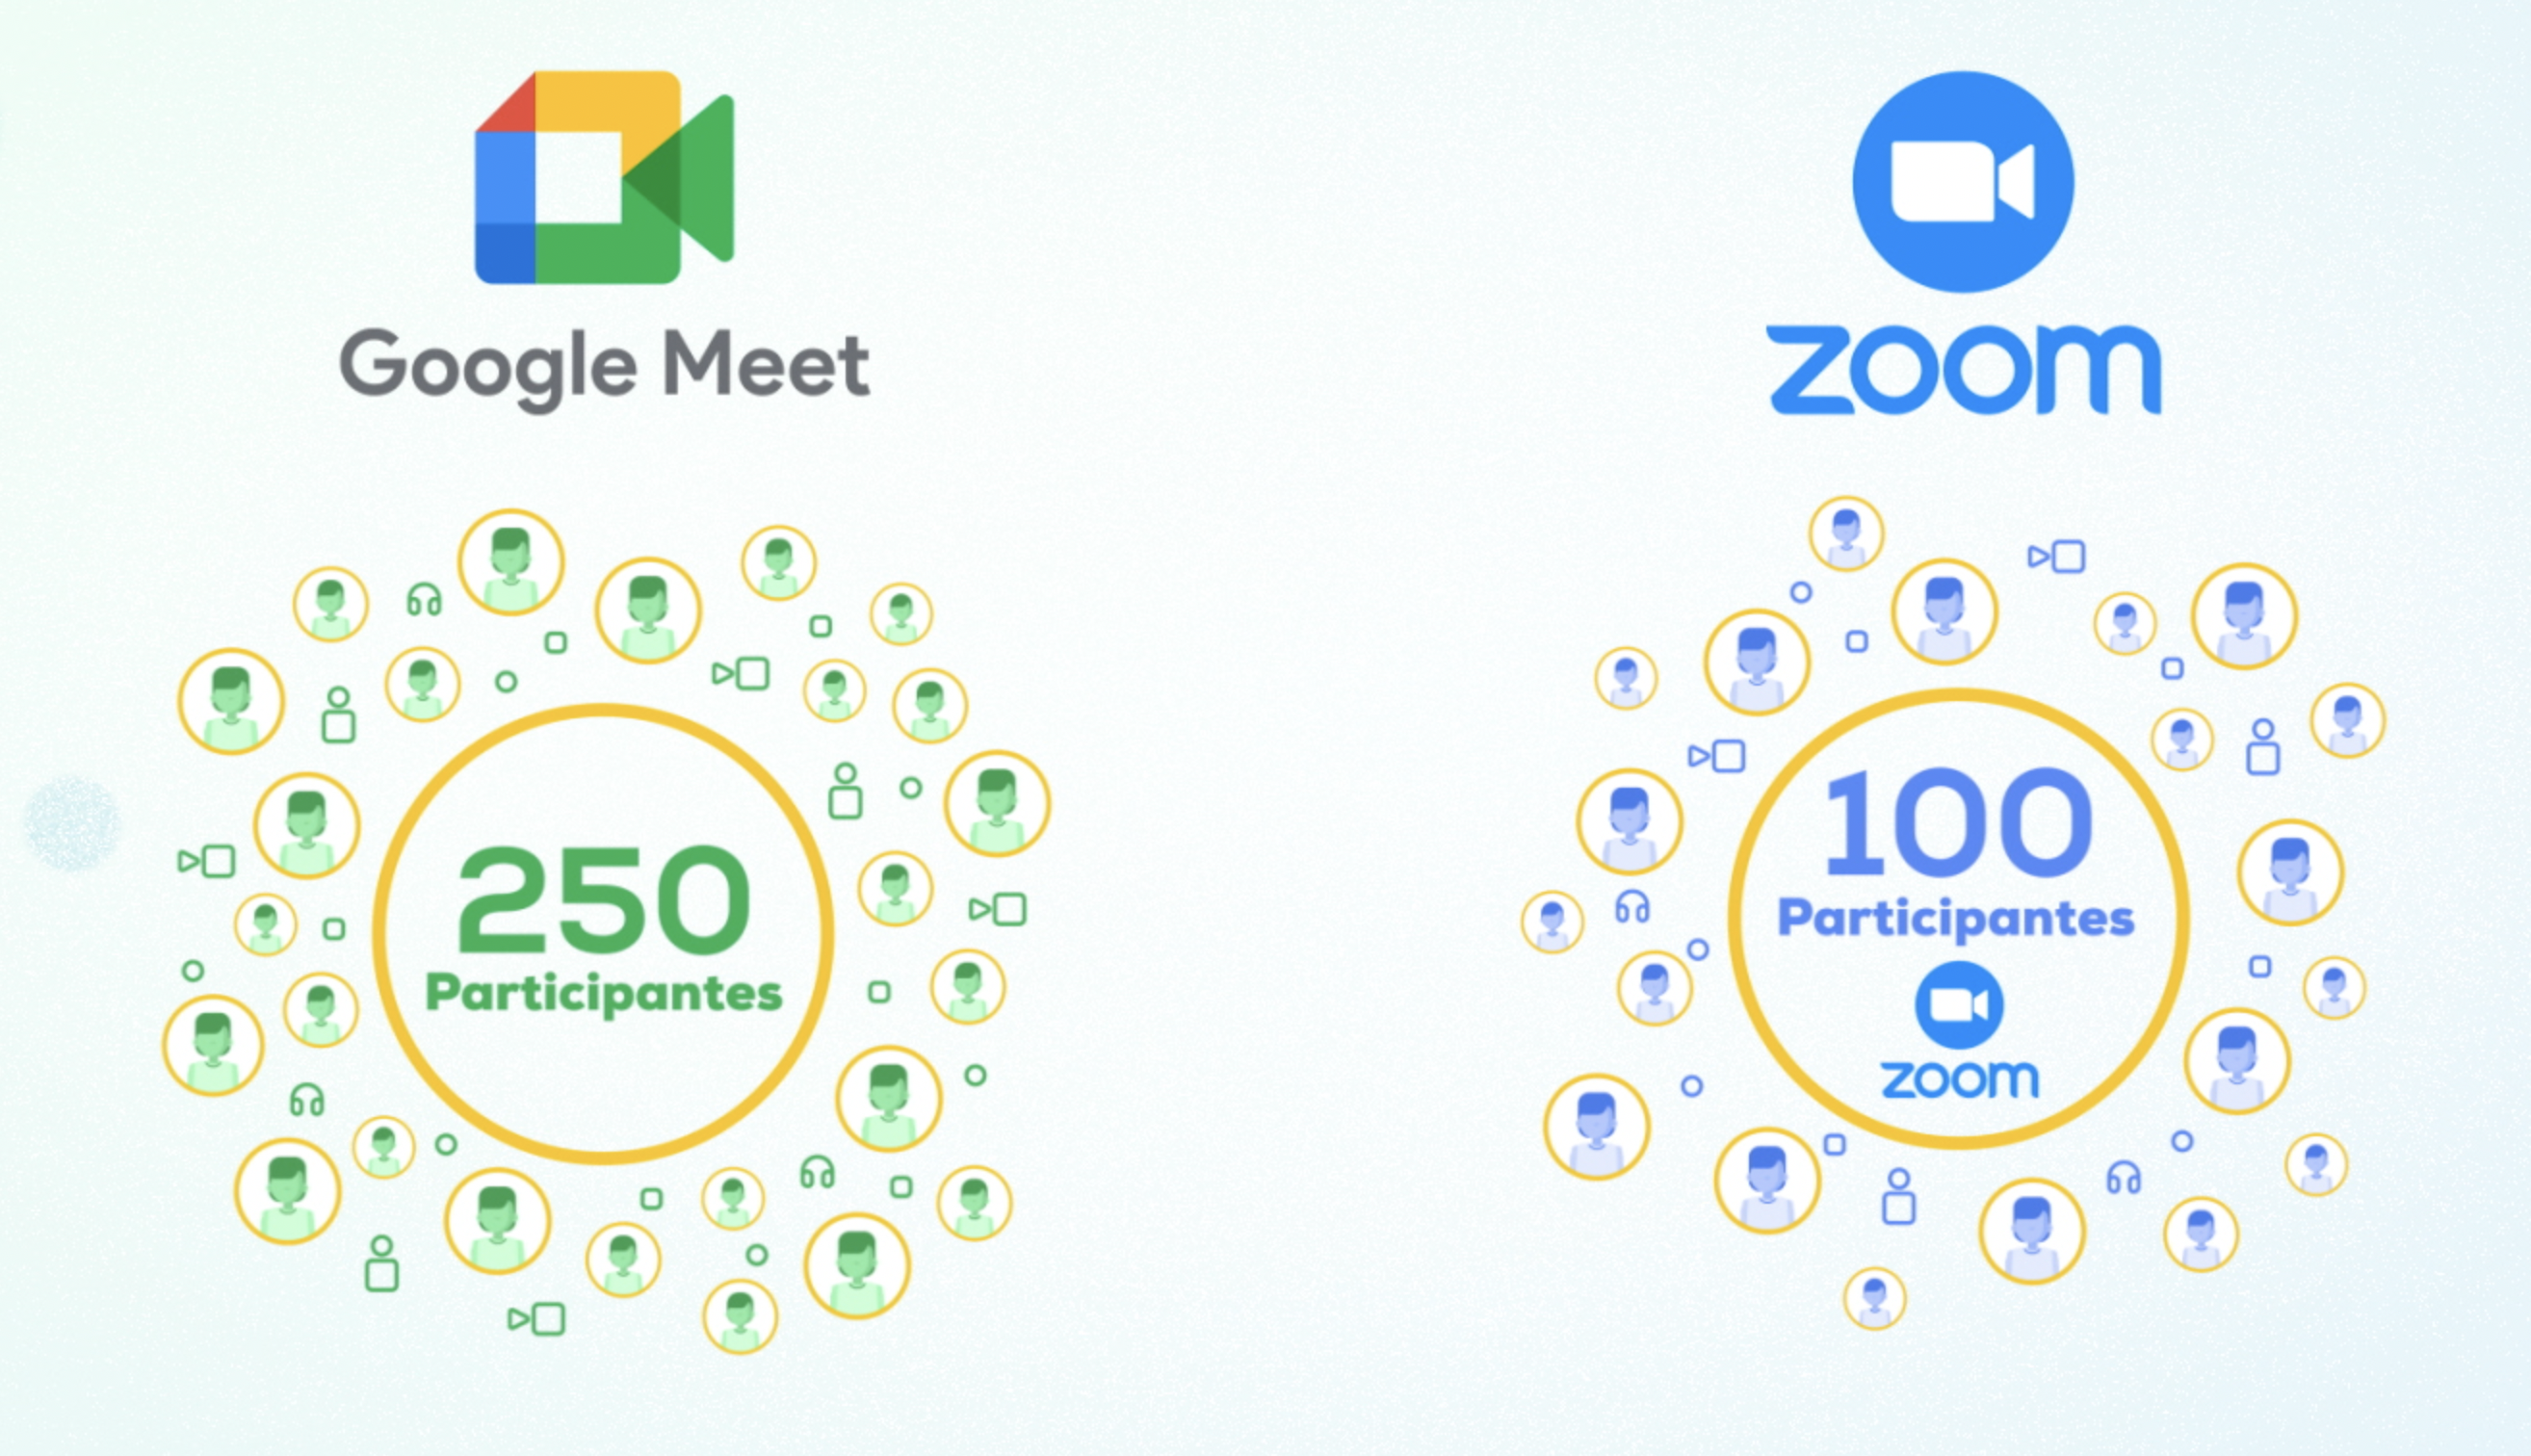 El máximo de participantes que pueden ingresar en una cuenta gratuita de Google Meet es de 250 participantes.  Mientras que en Zoom solo pueden ingresar 100 personas Aunque si deseas añadir más integrantes podrás hacerlo con el plan pago de Zoom.